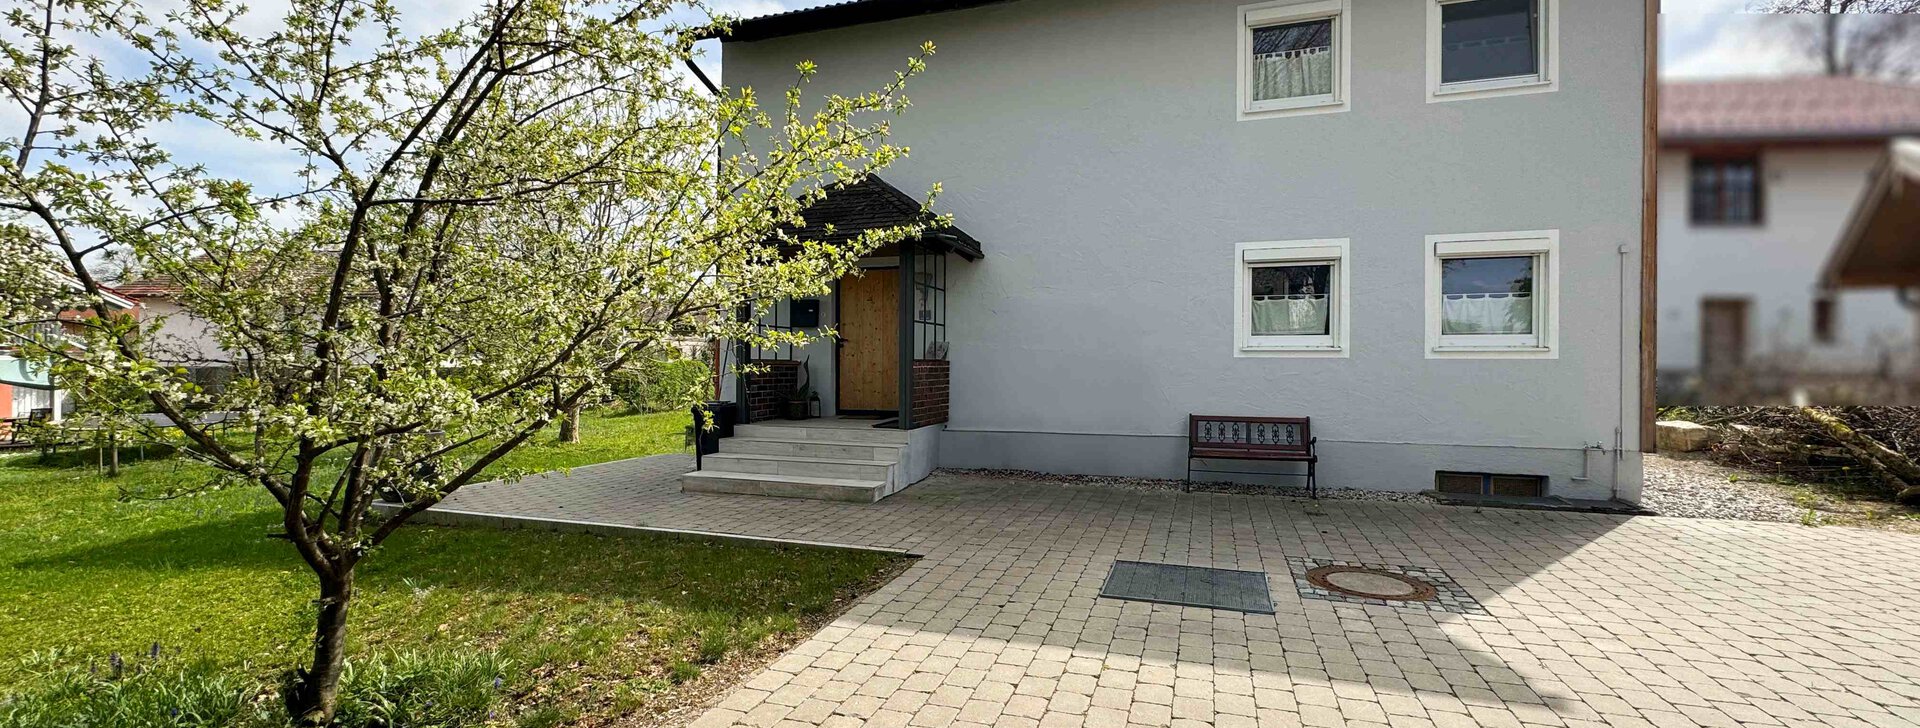 Außenansicht, Einfamilienhaus, Immobilie kaufen, Wolkersdorf-Traunstein | © HausBauHaus GmbH 